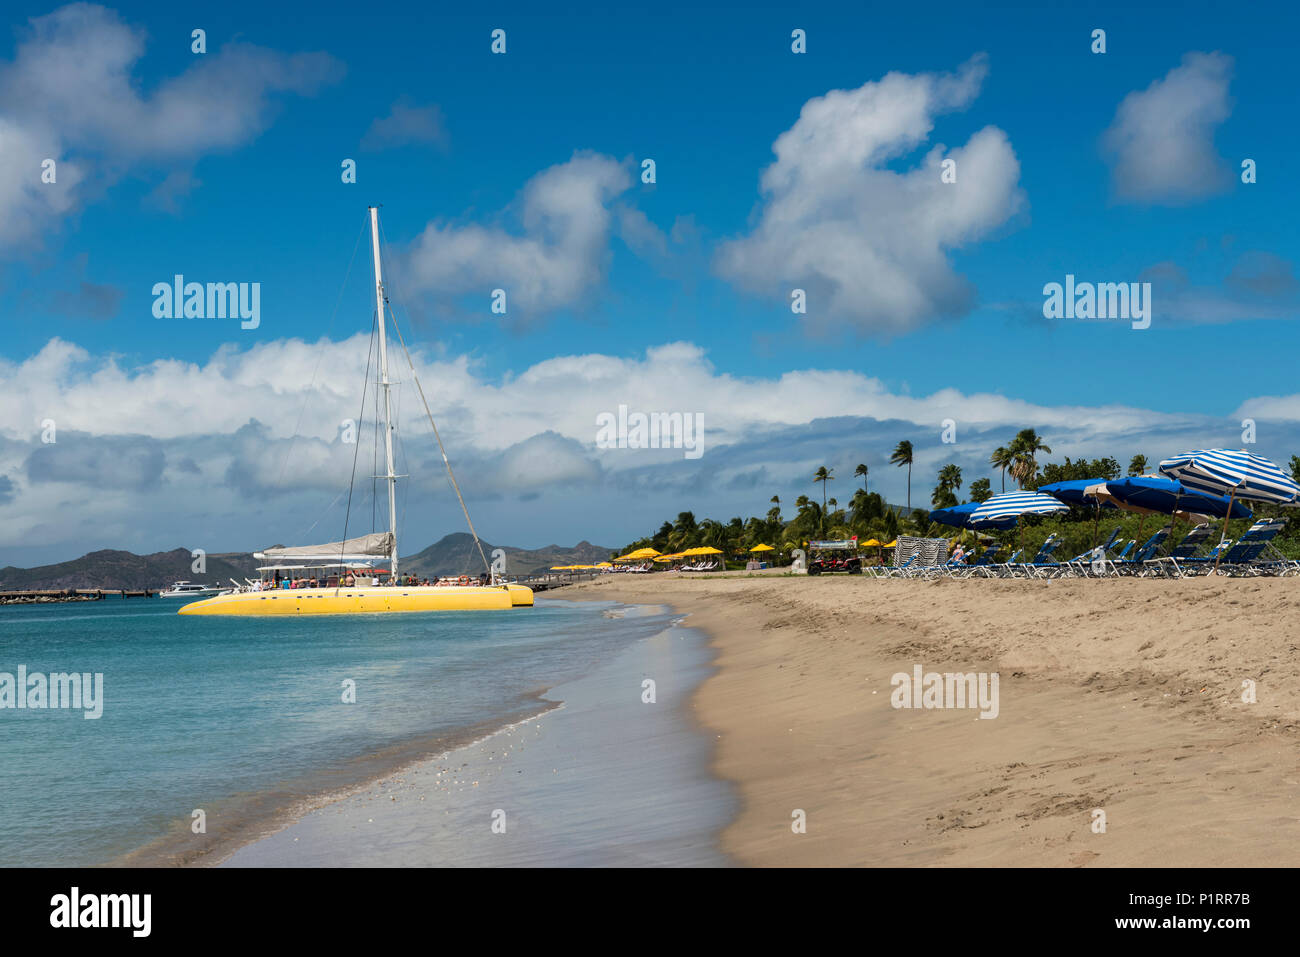 Il catamarano giallo e ombrelli a strisce lungo la spiaggia di Isola dei Caraibi; Nevis, West Indies Foto Stock